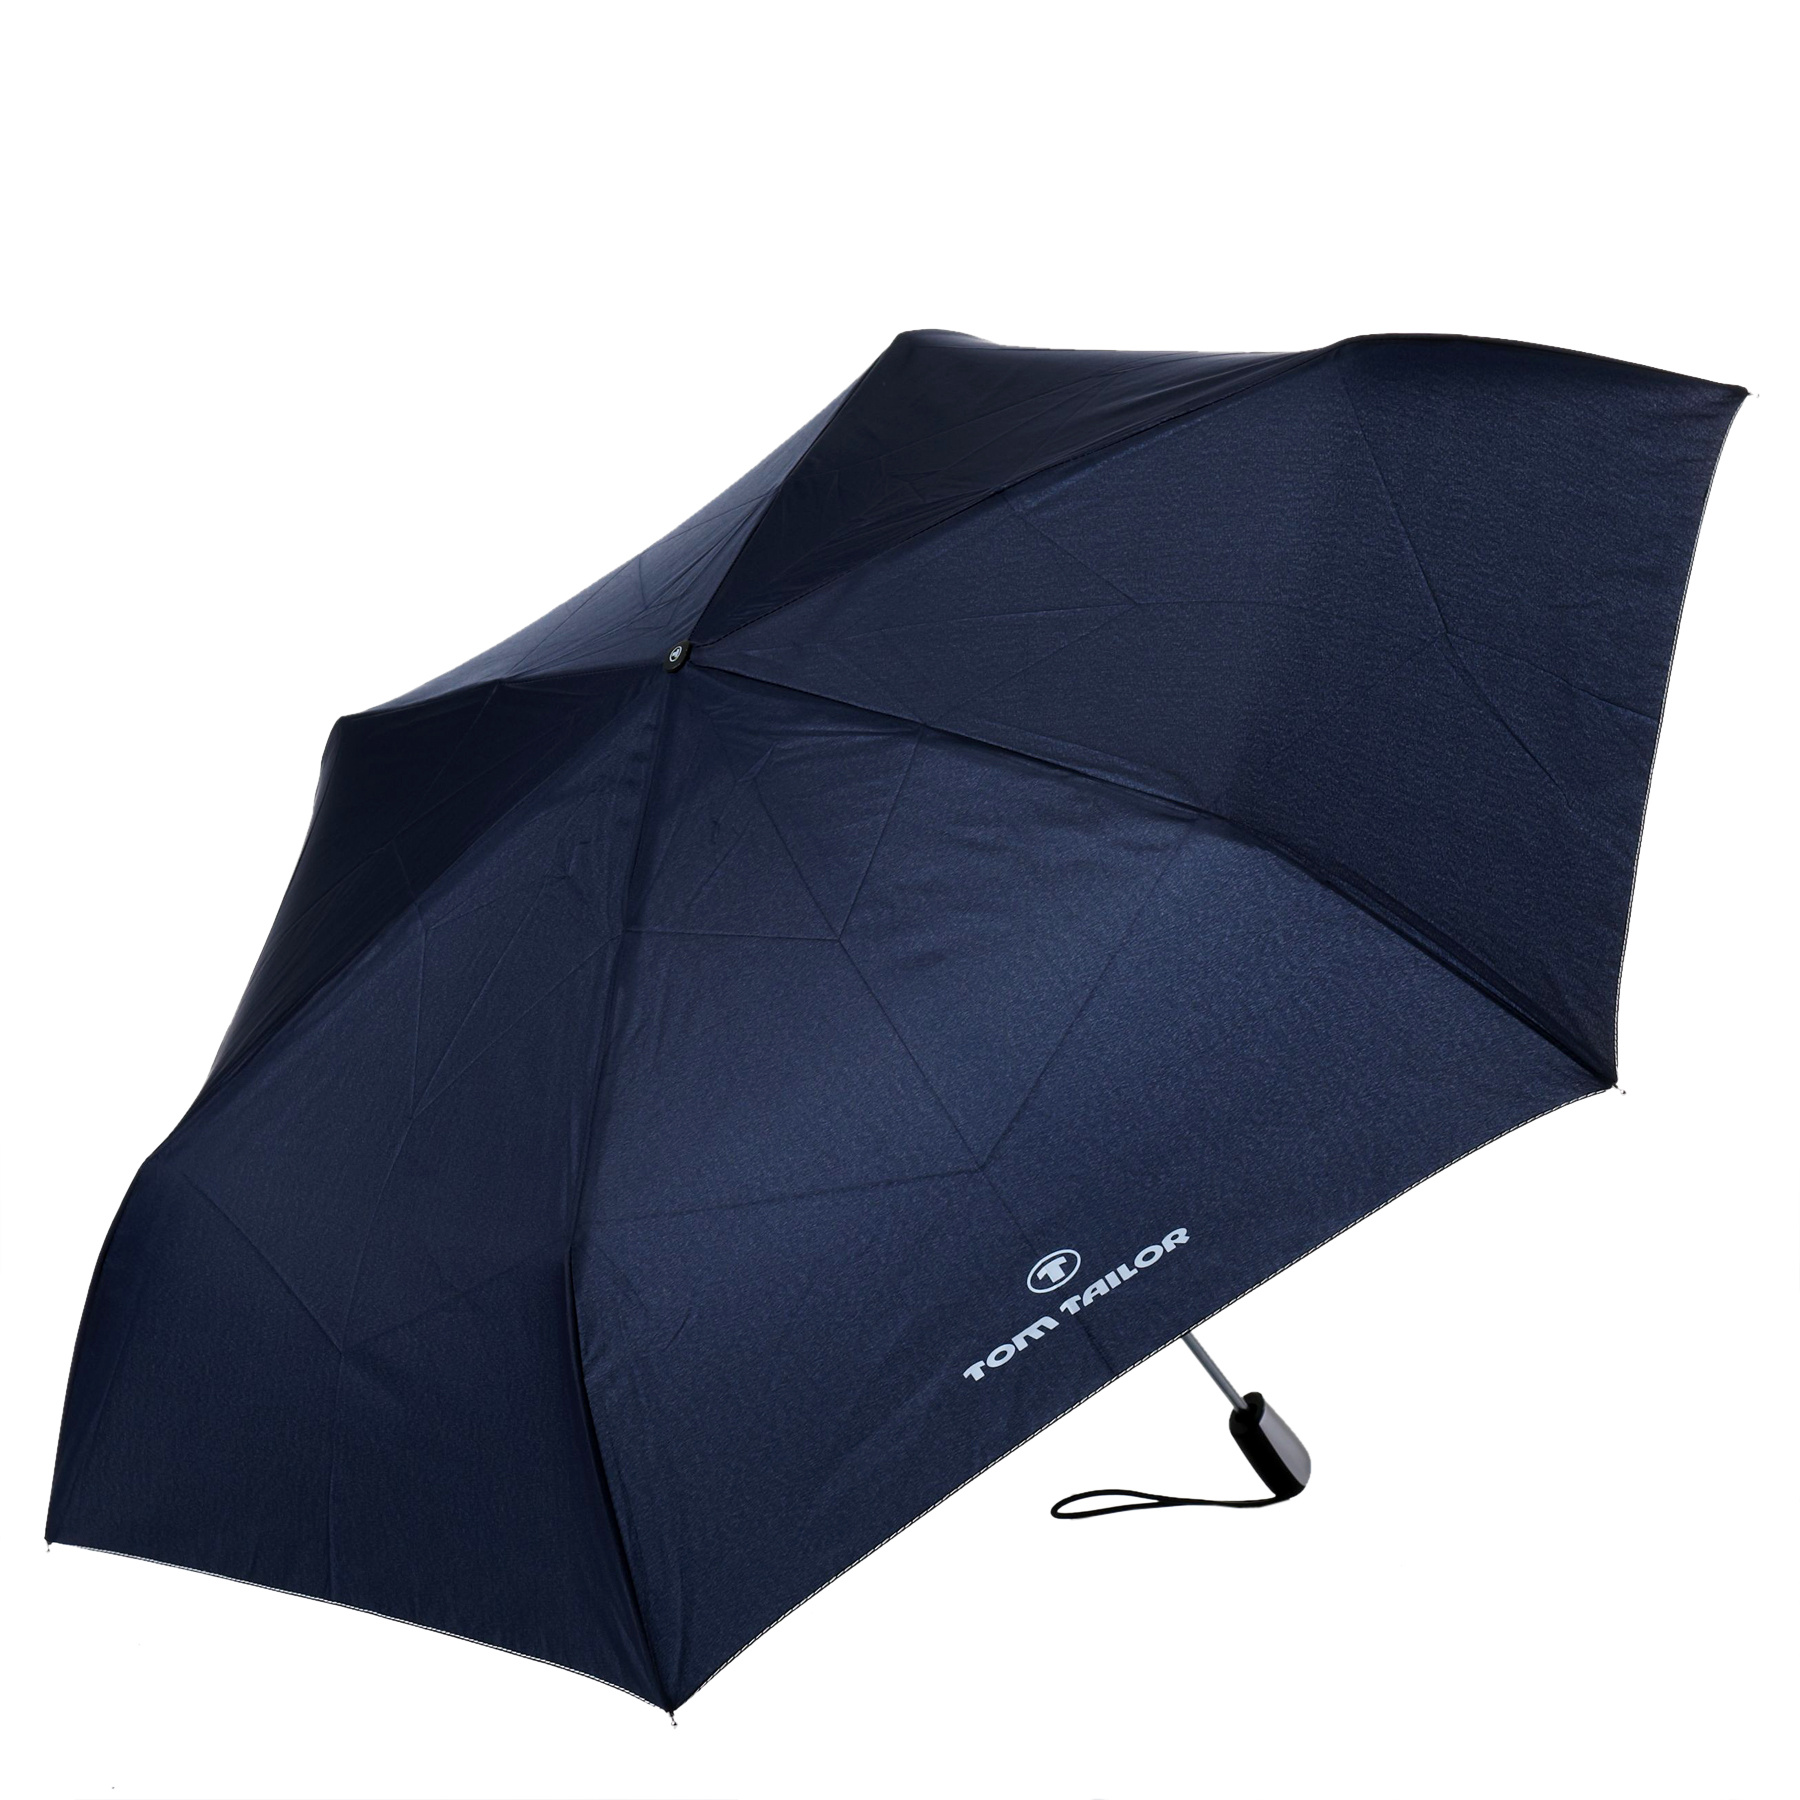 Зонтик рост. Зонт Renoma GMR/0430b (черный). Зонт Ramuda, CMIH-1703/Navy. Portobello зонт Dune. LG-814в зонт.